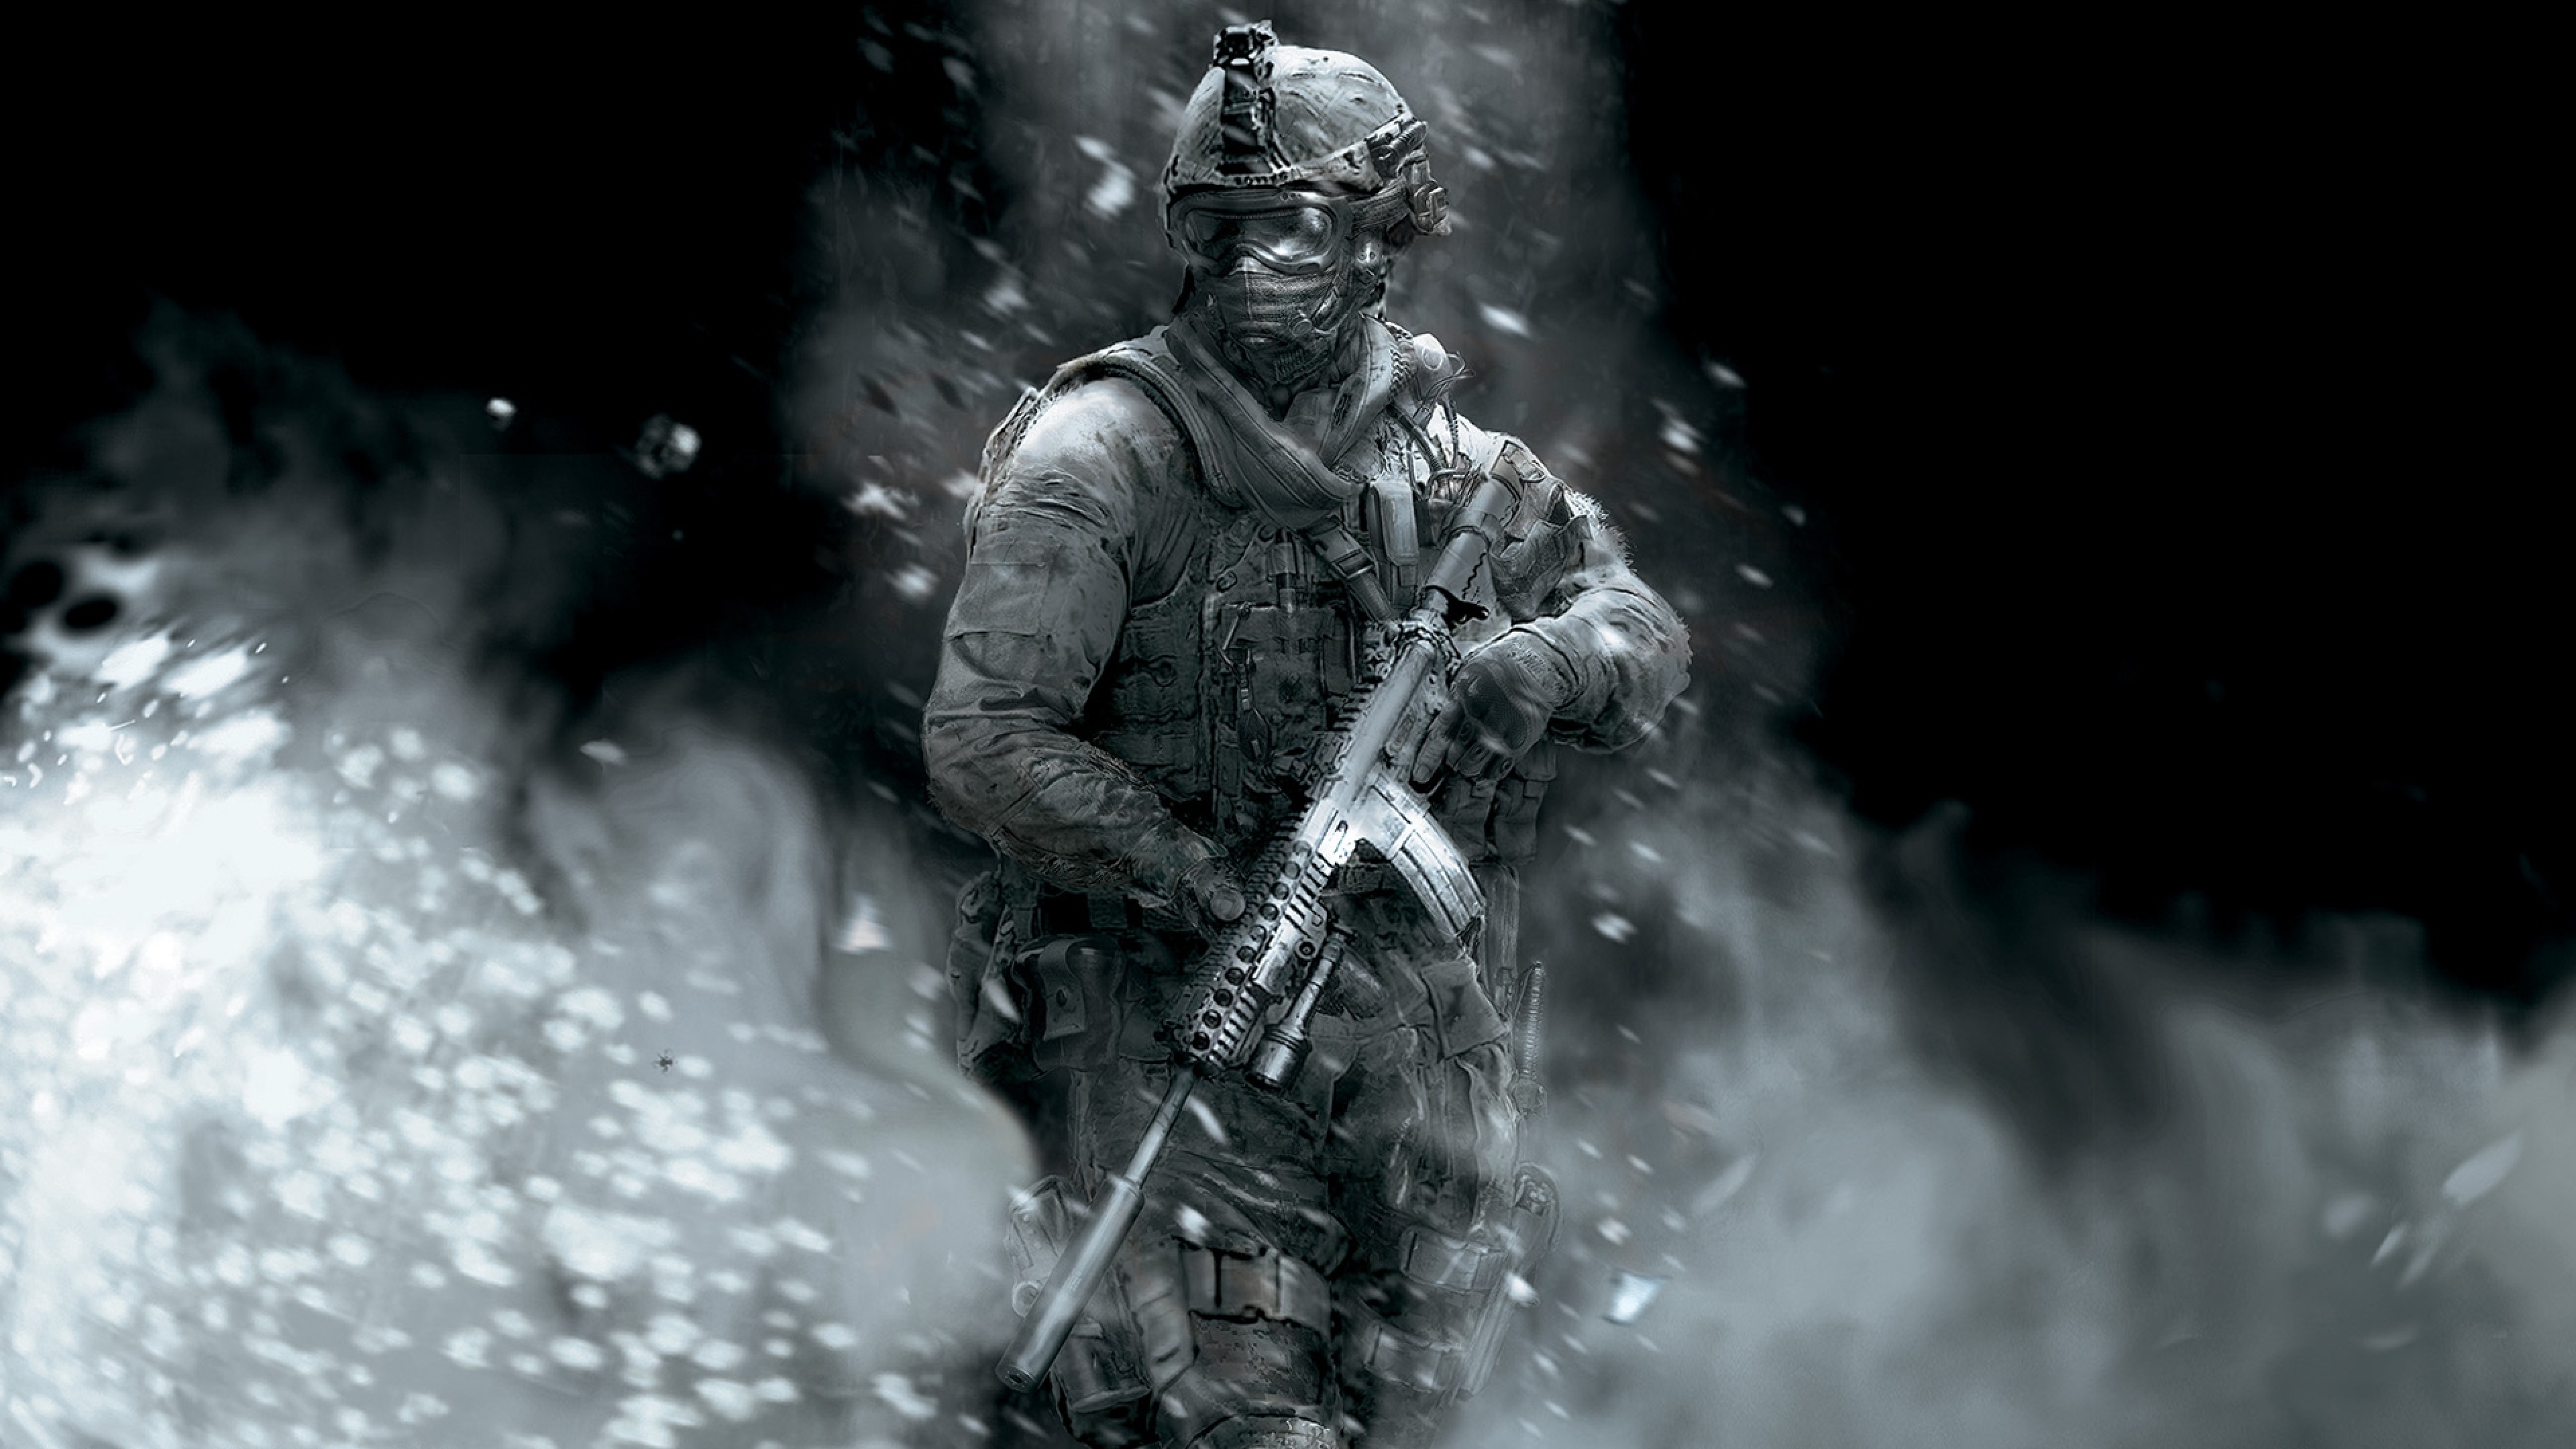 4k Ultra Hd Call Of Duty Wallpapers Hd, Desktop Backgrounds - Duty Modern  Warfare 2 - 3840x2160 Wallpaper 